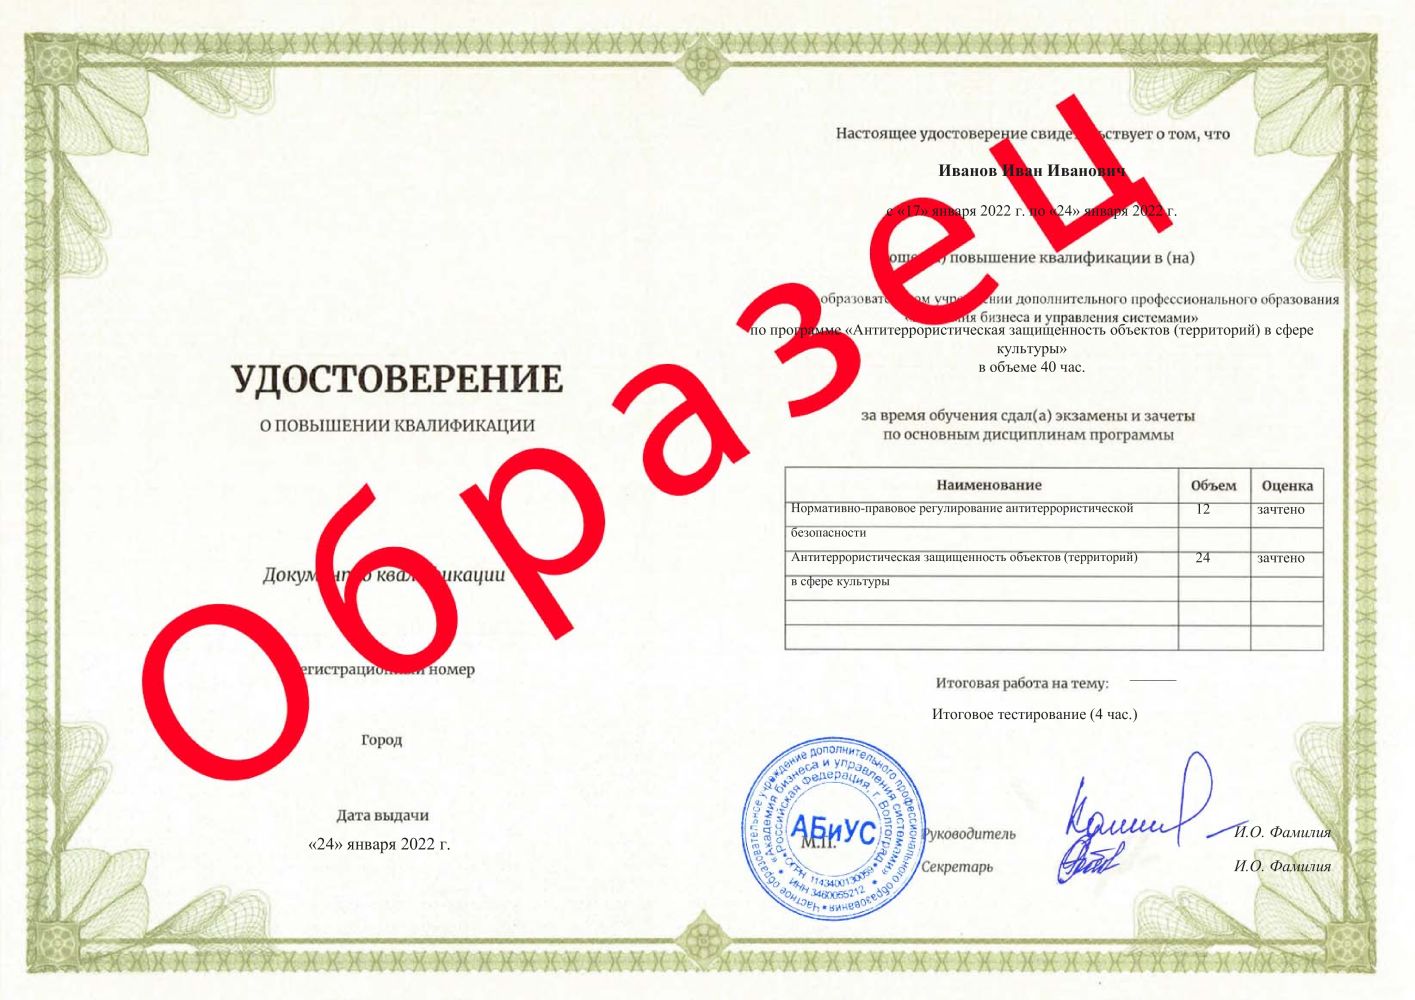 Удостоверение Антитеррористическая защищенность объектов (территорий)  в сфере культуры 40 часов  2188 руб.